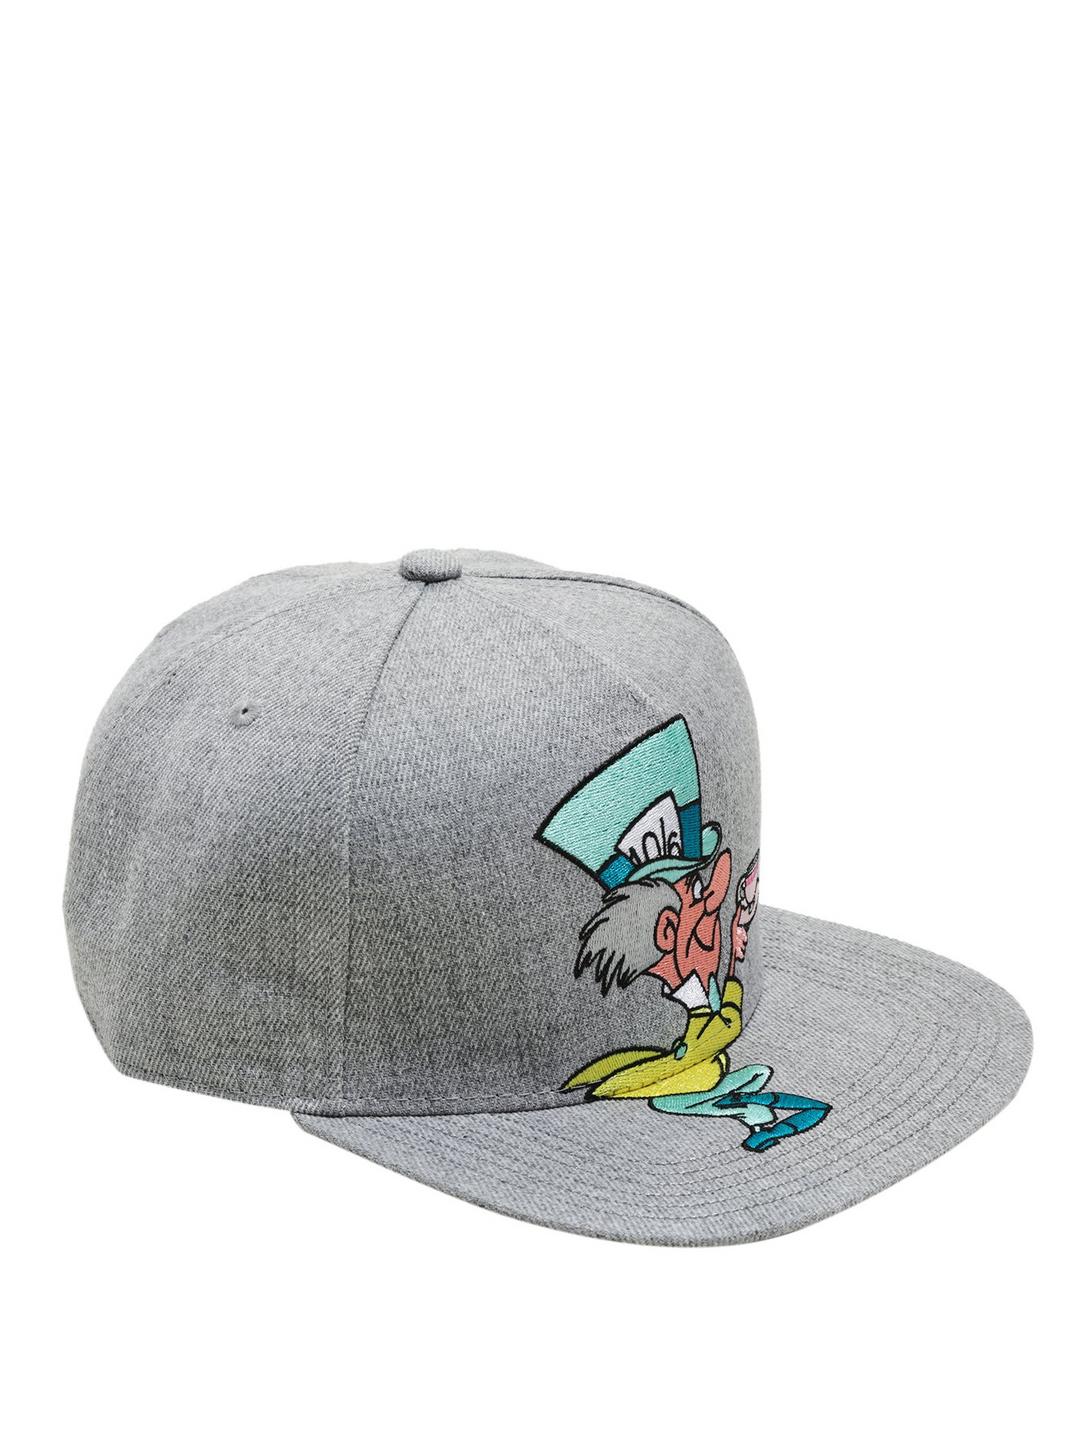 Disney Alice In Wonderland The Mad Hatter Snapback Hat, , hi-res